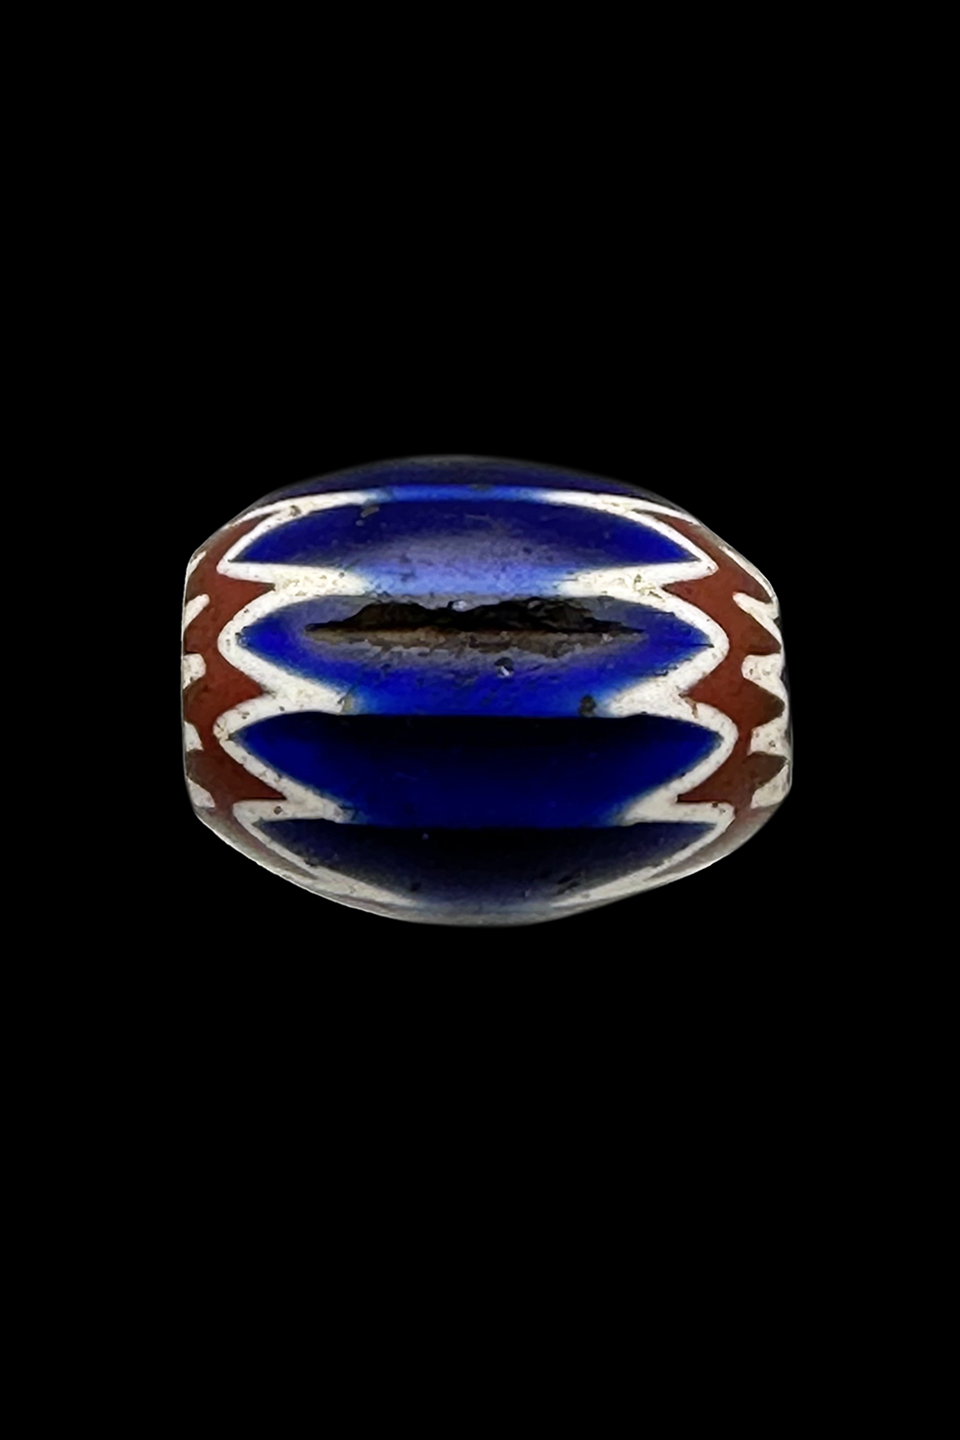 Chevron 6 Layer Glass Trade Bead - Originated in Venice, Italy 15